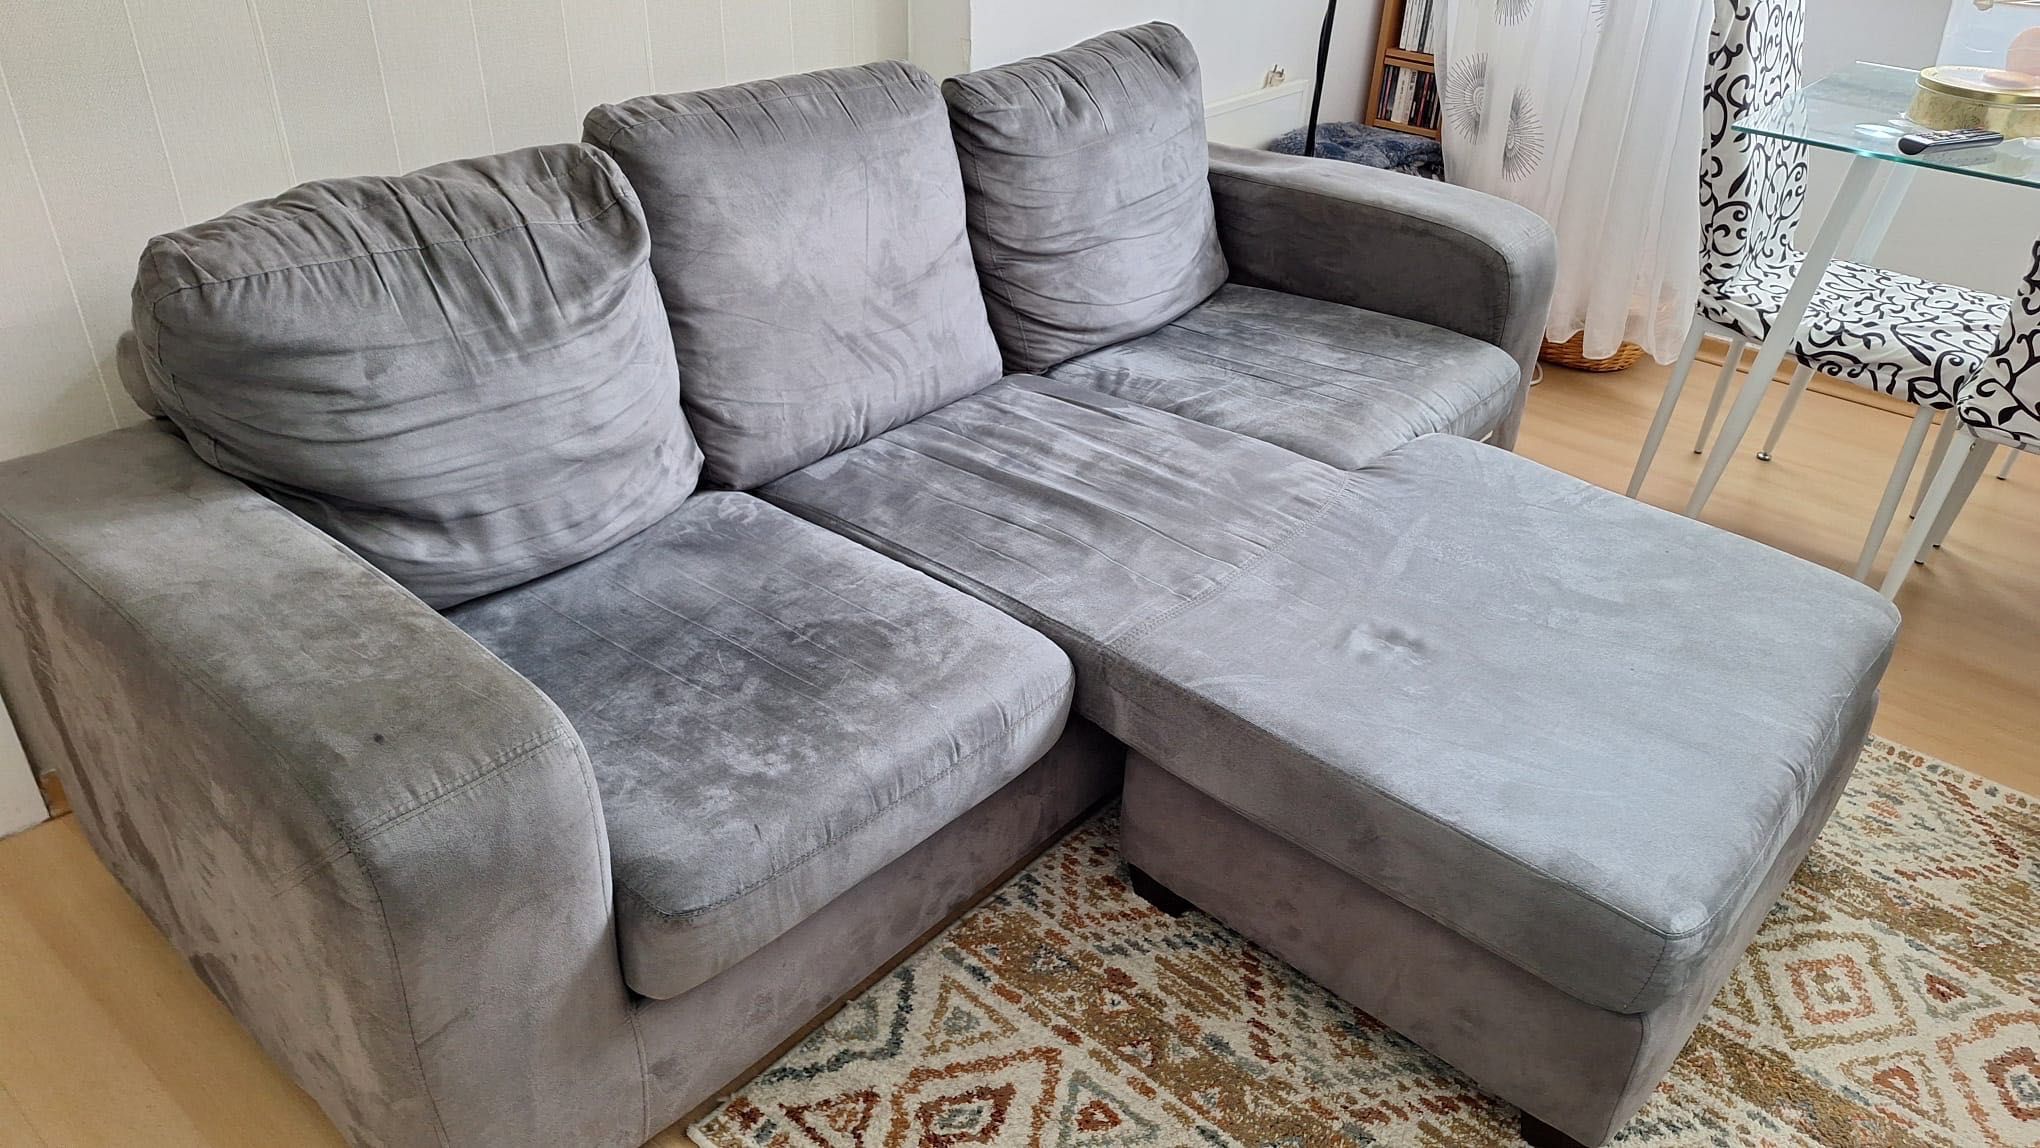 Sofa usado em ótimo estado